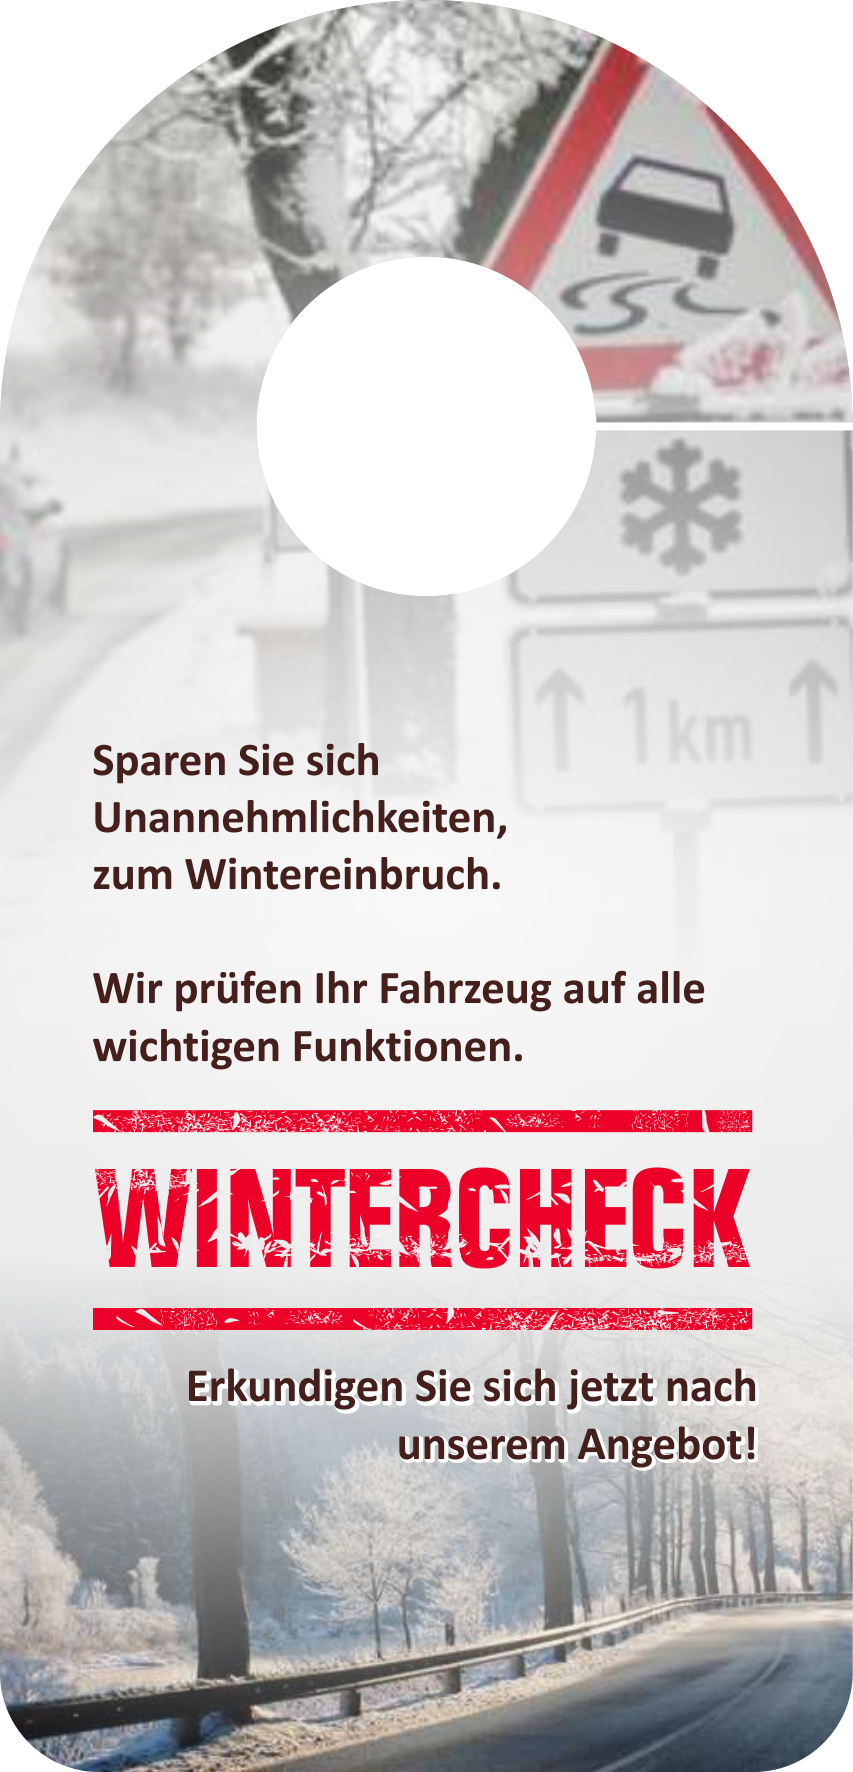 Spiegelanhänger "Wintercheck Angebot"